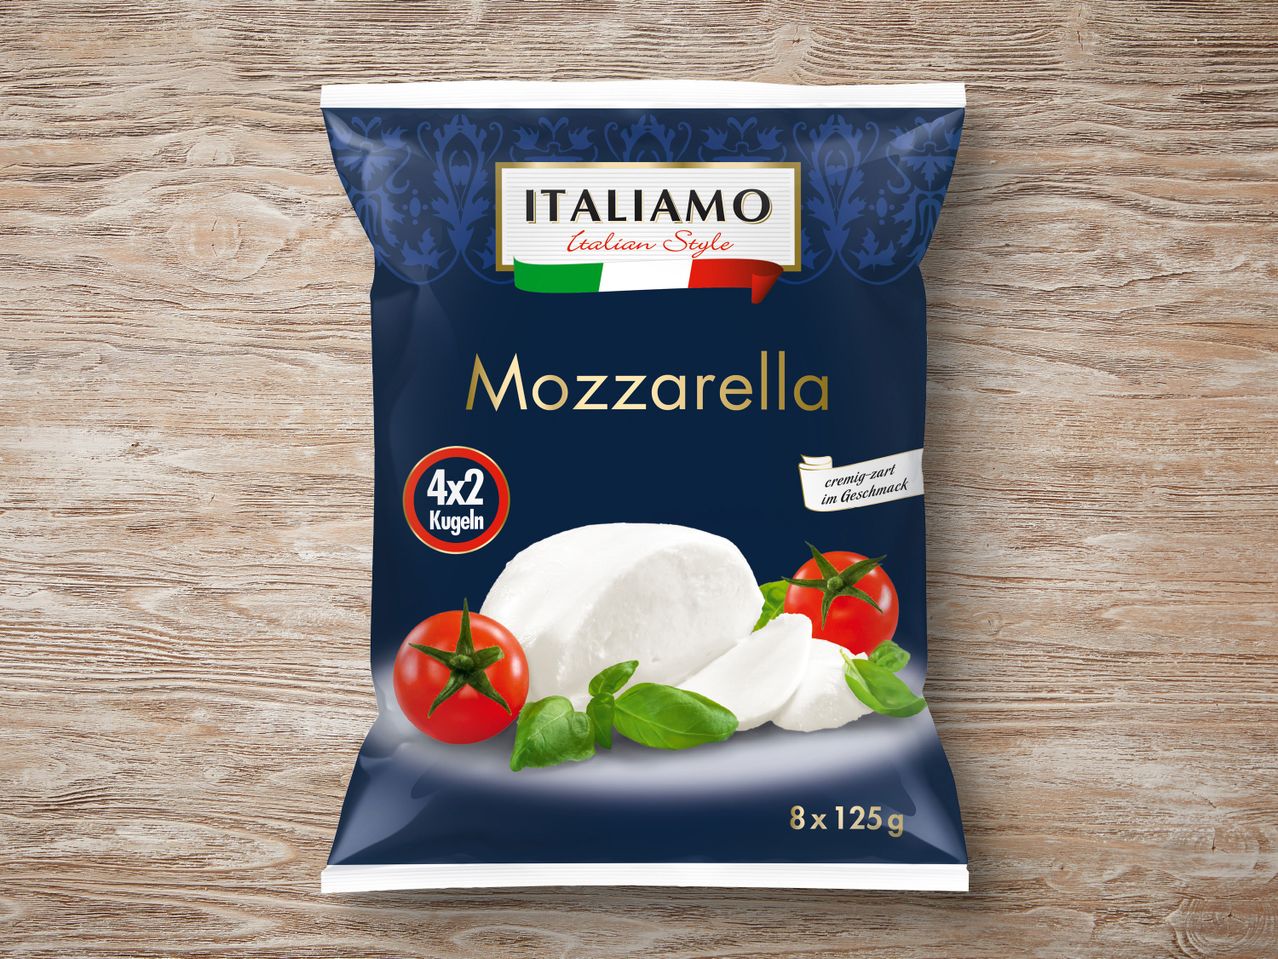 außerordentlich Italiamo Mozzarella Multipack